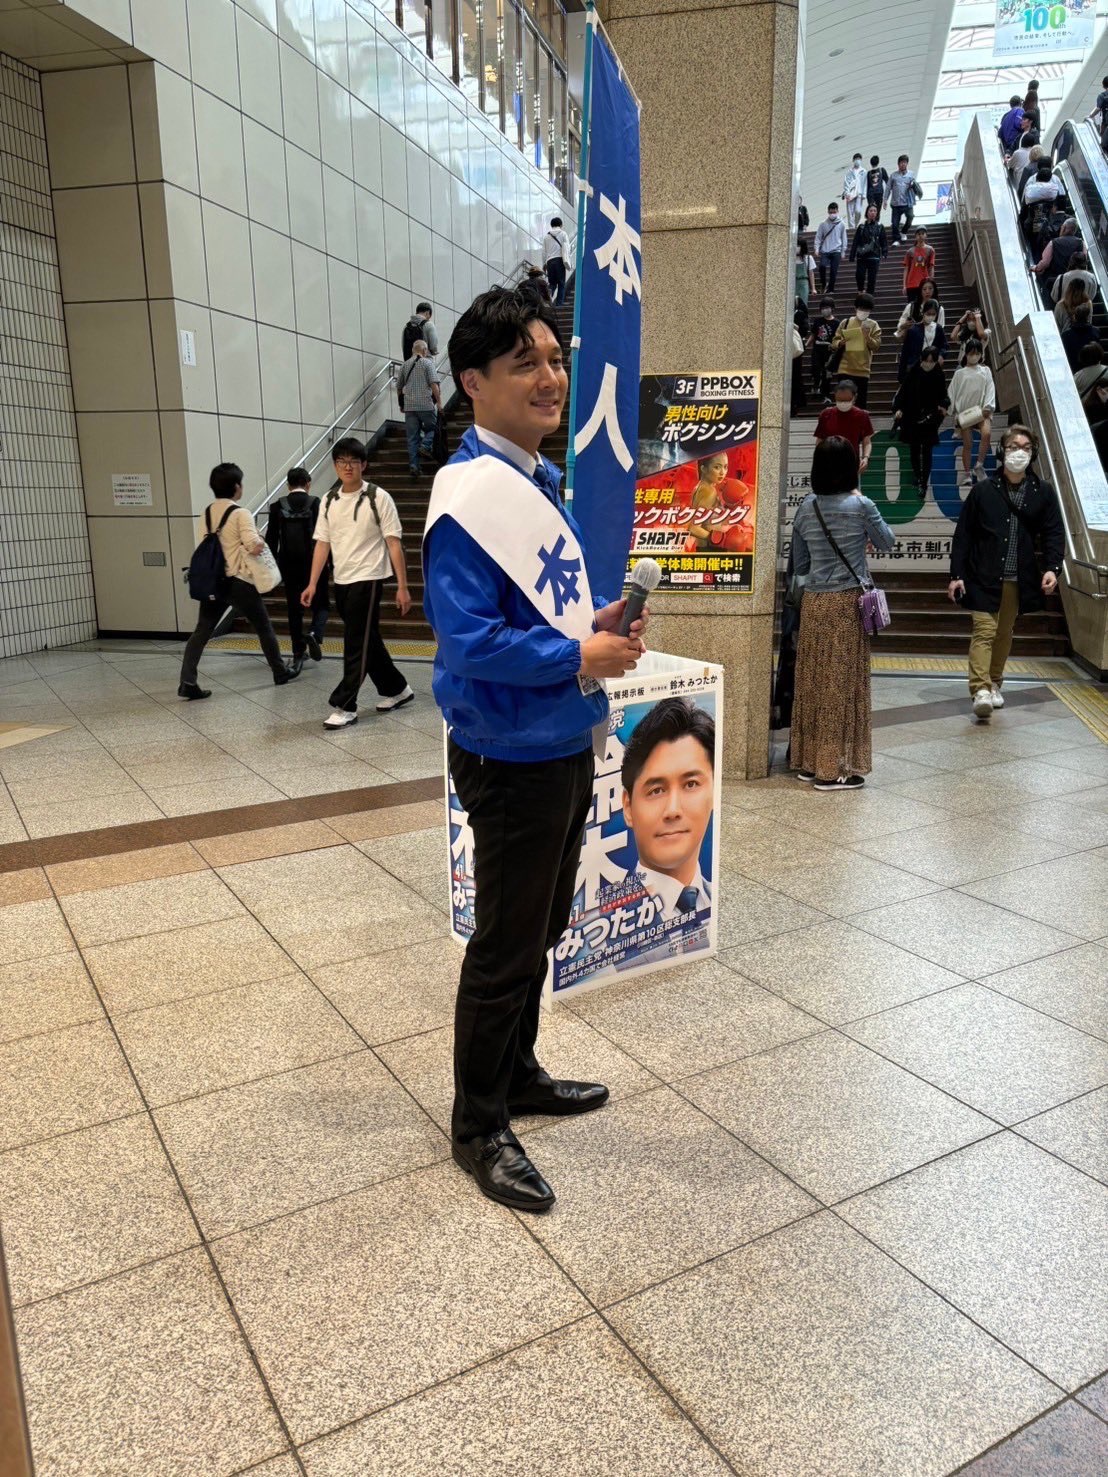 4/21 街頭活動@川崎駅東口→西口